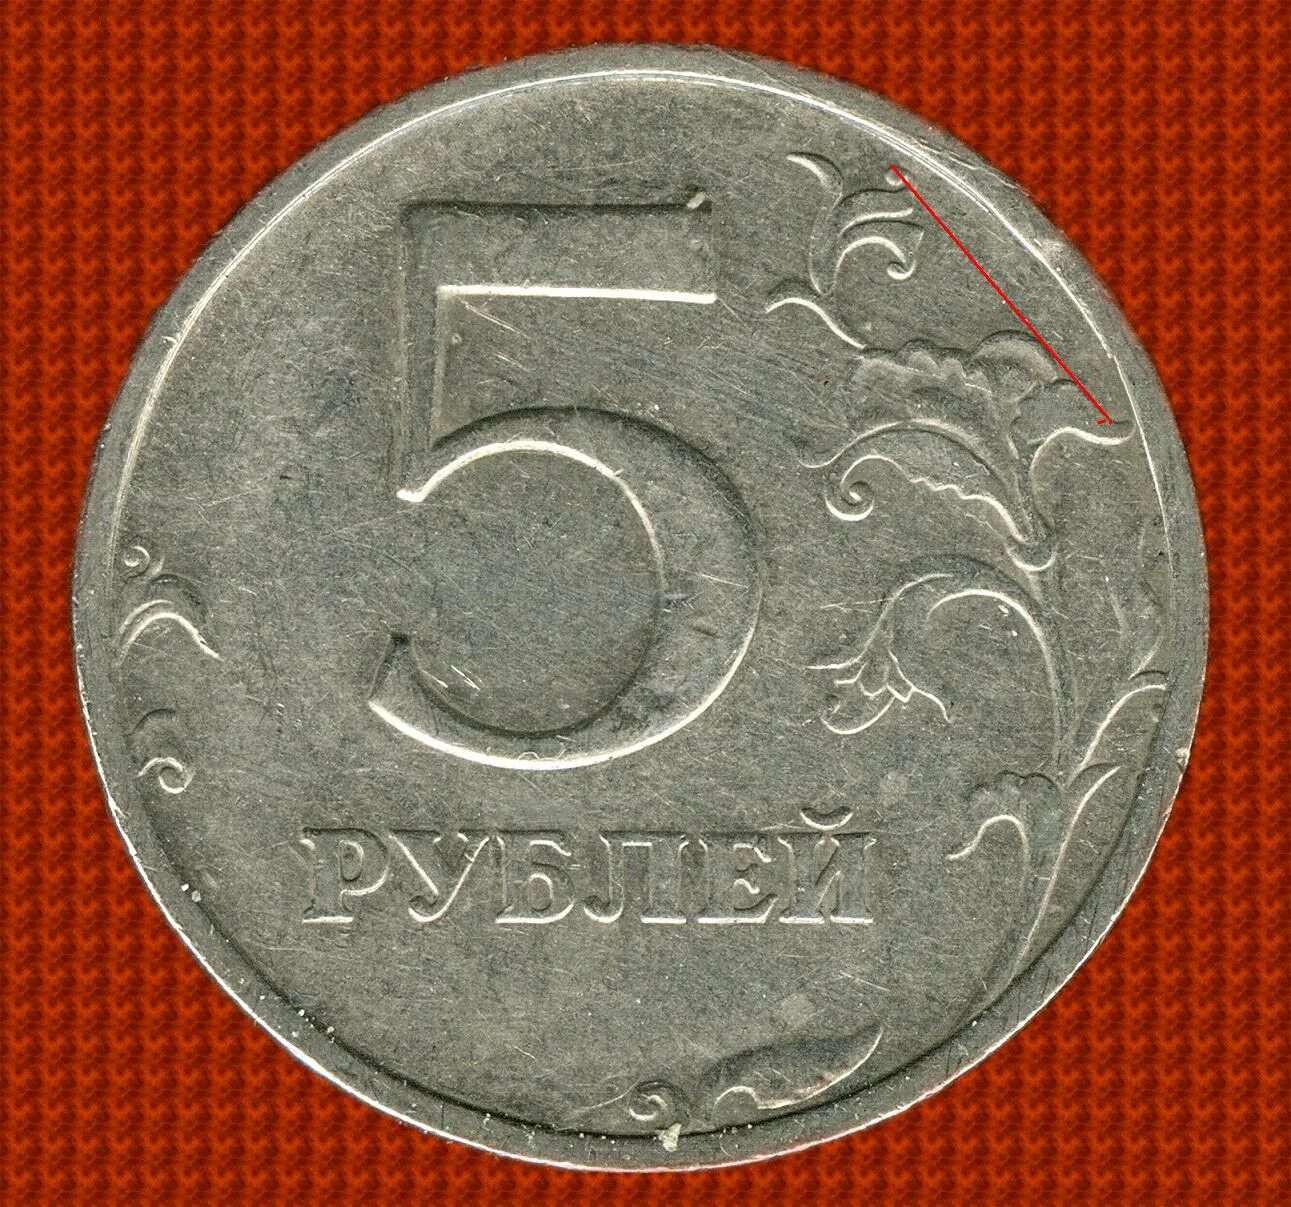 5 Рублей 1998 ММД. 5 Рублей 1998 СПМД. 5 Рублей 1998 Московский монетный двор. Пять рублей.